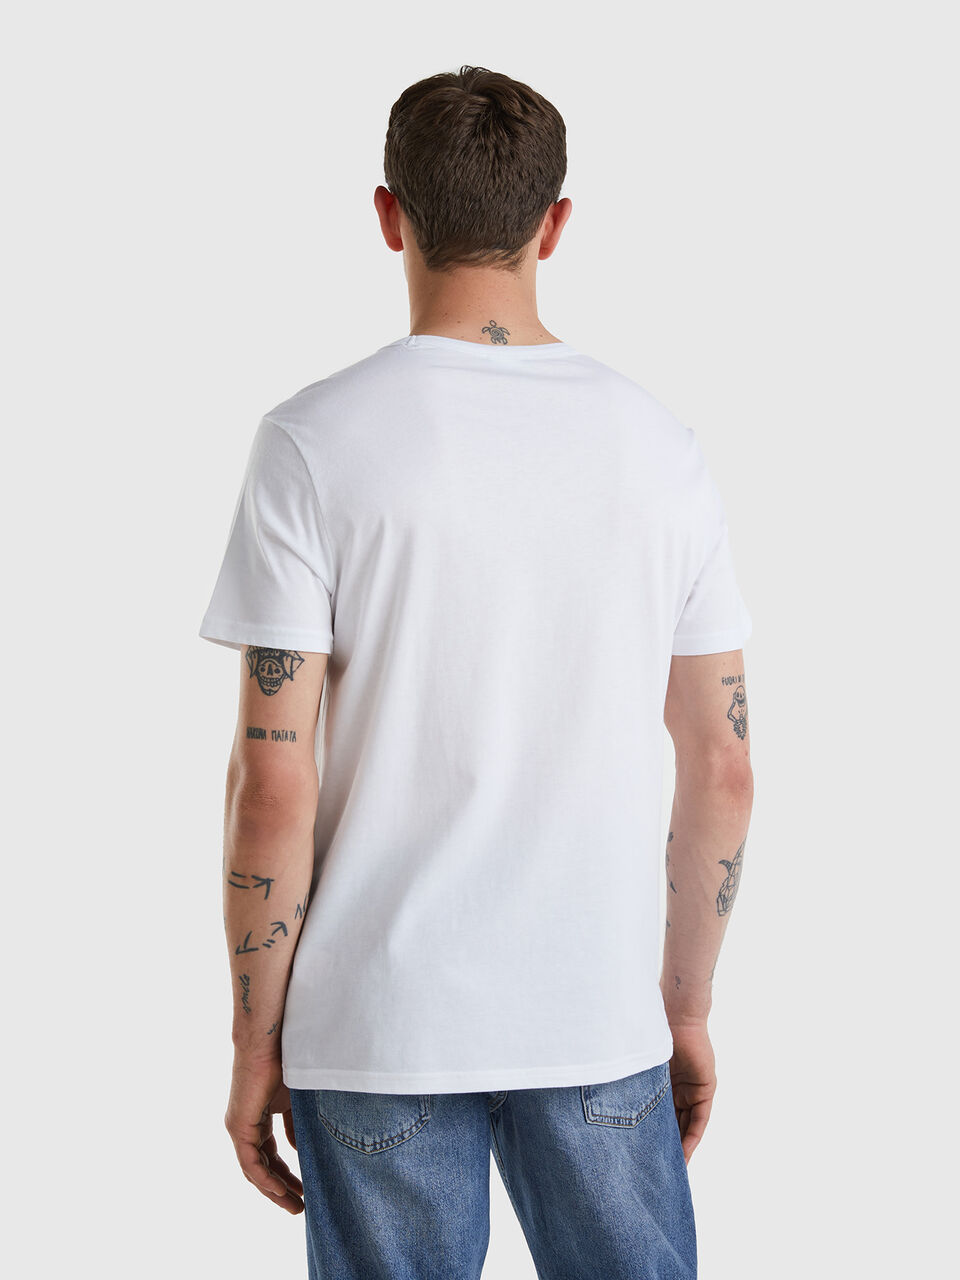 Camisetas orgánicas baratas color blanco ♻️